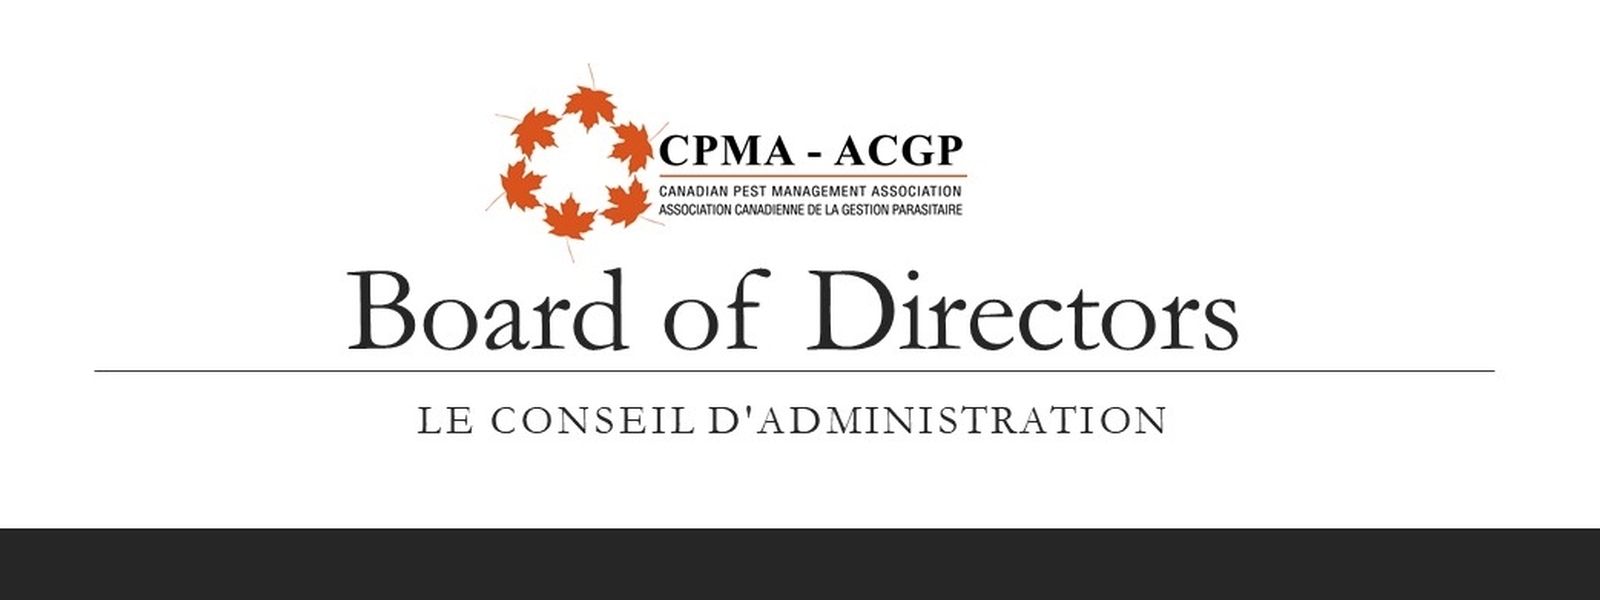 Meet the CPMA Board